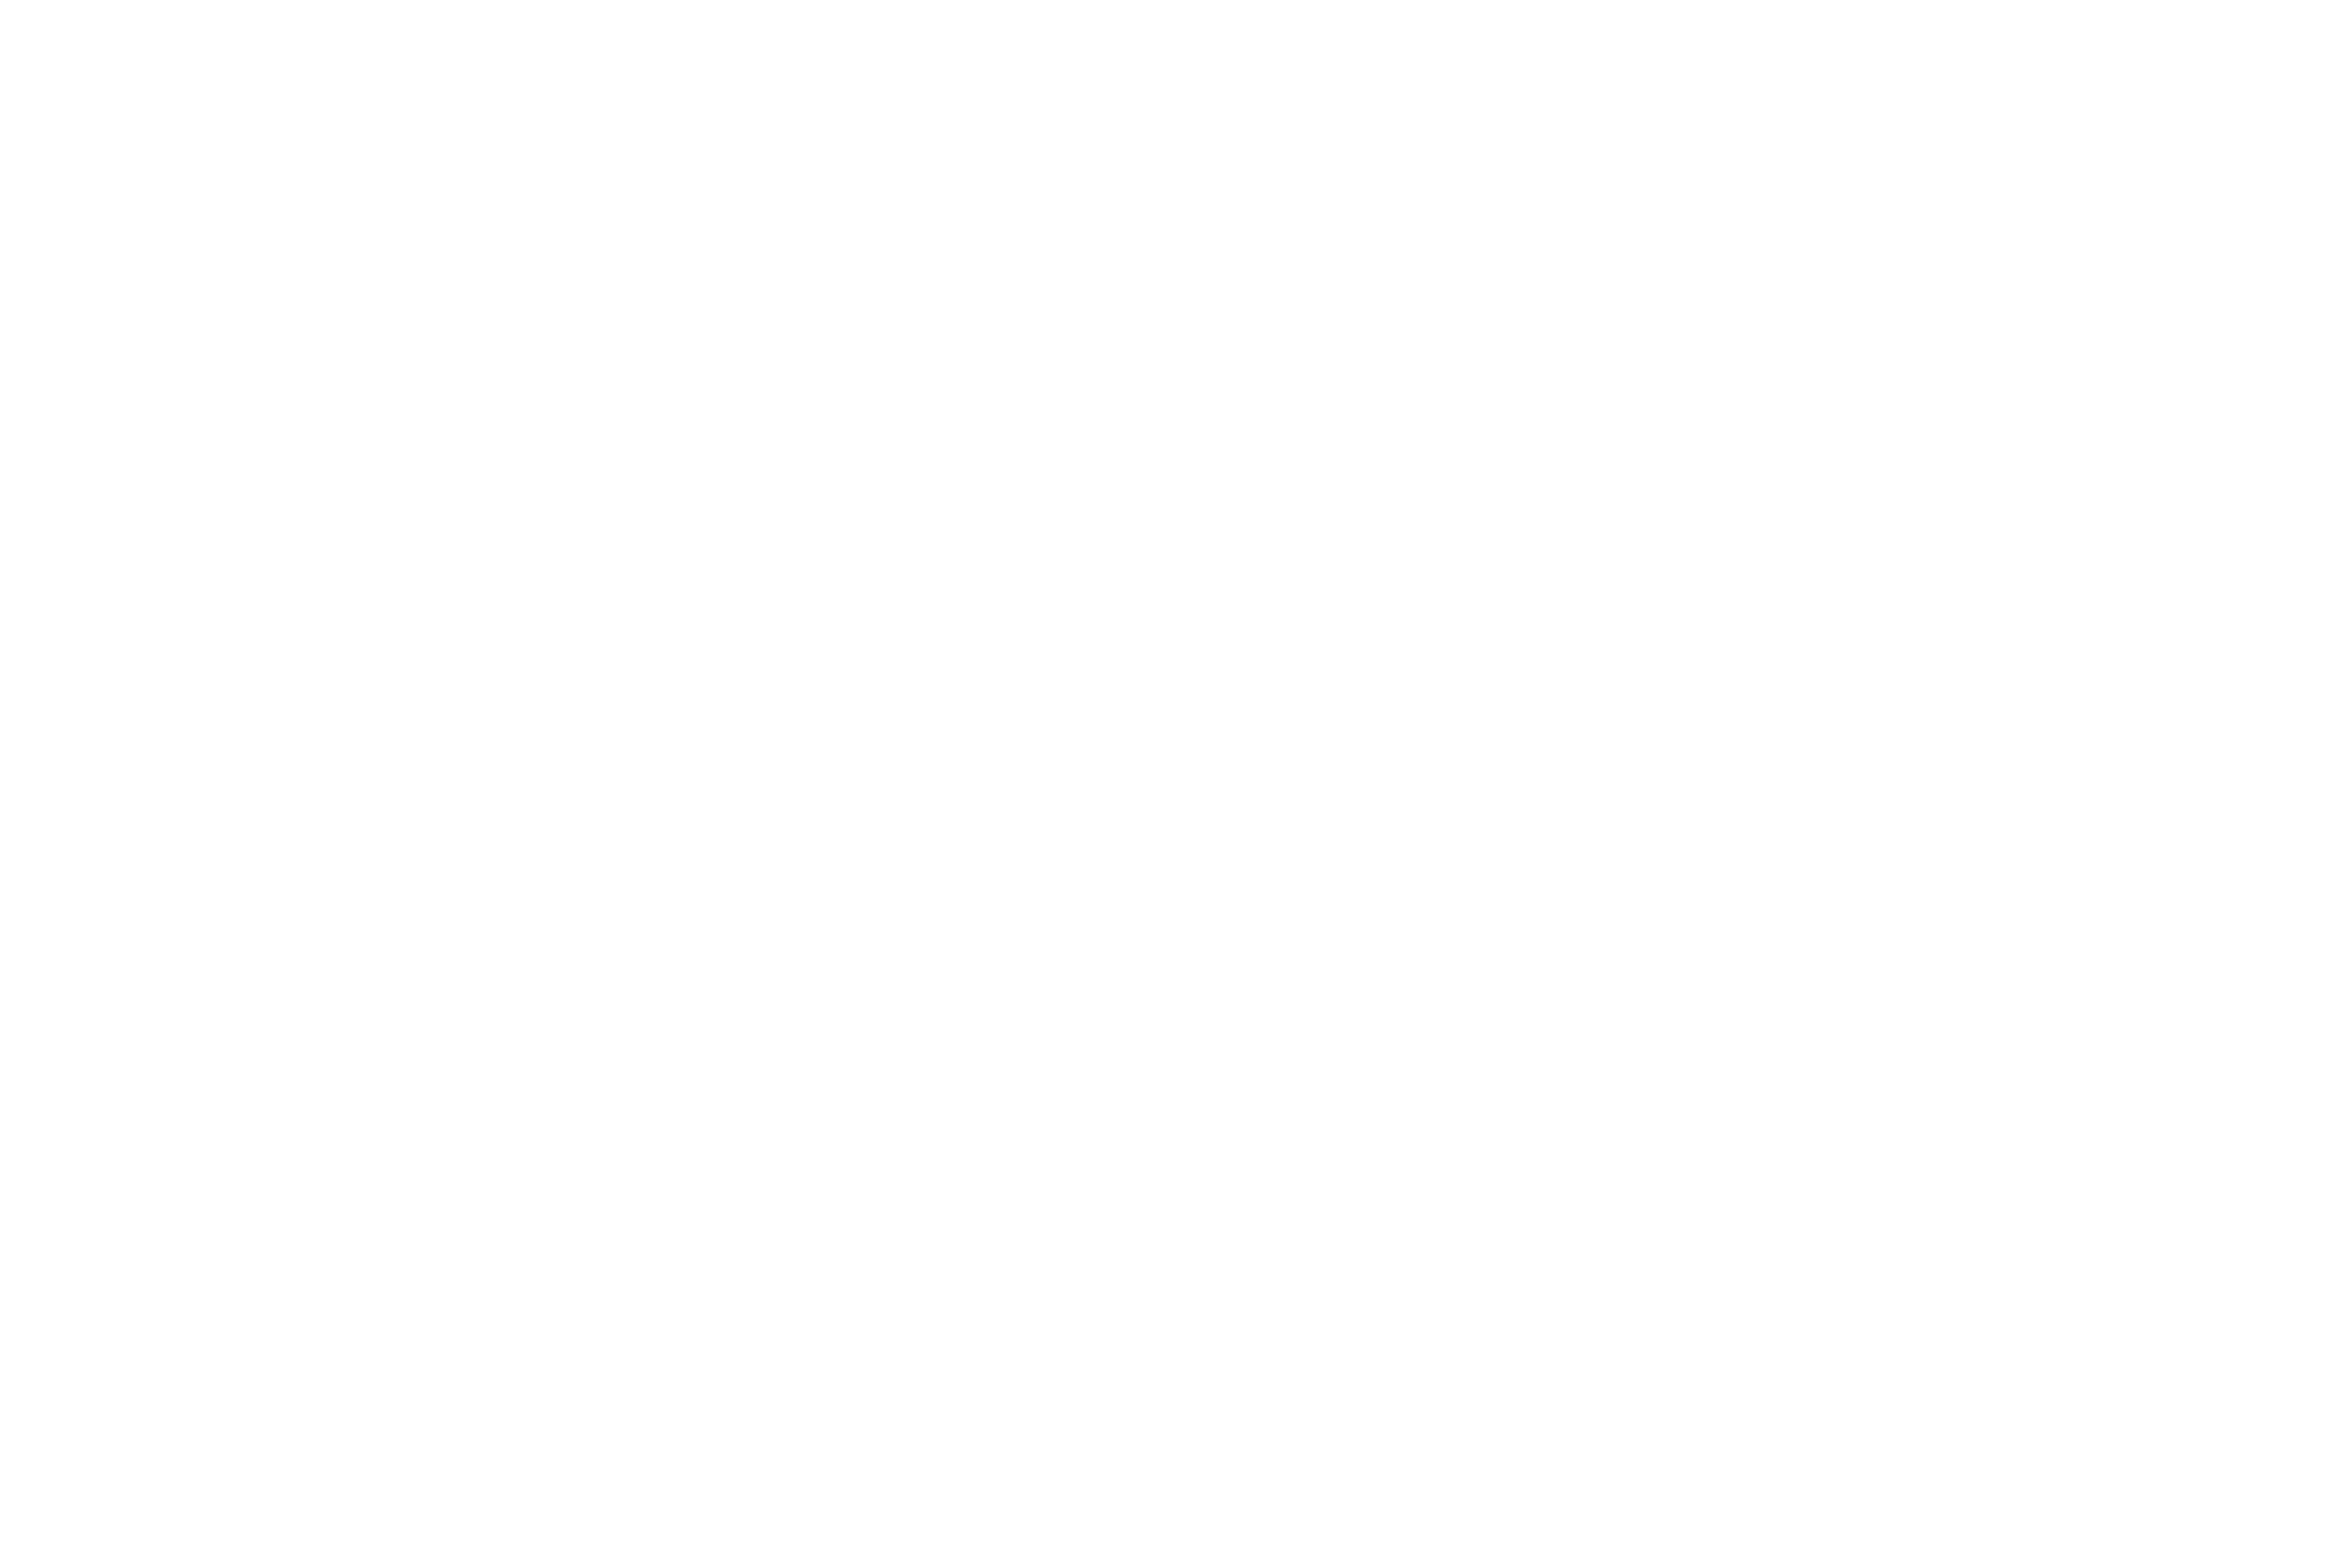 Taron Breen